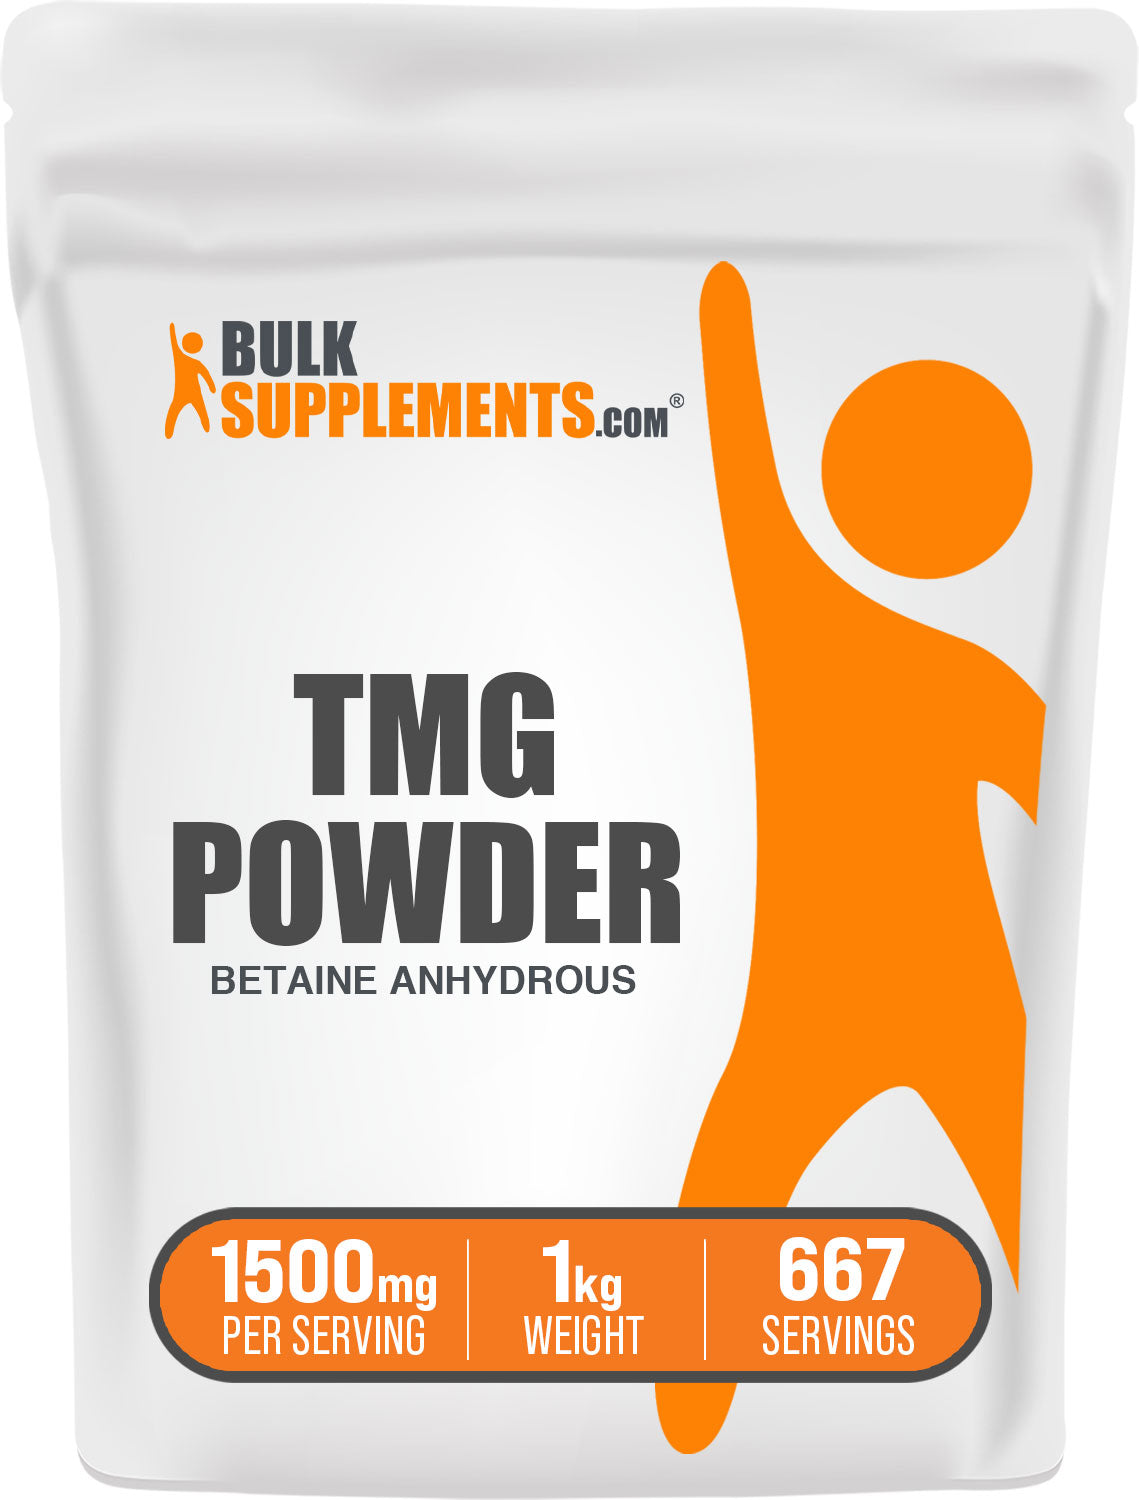 1kg tmg supplements